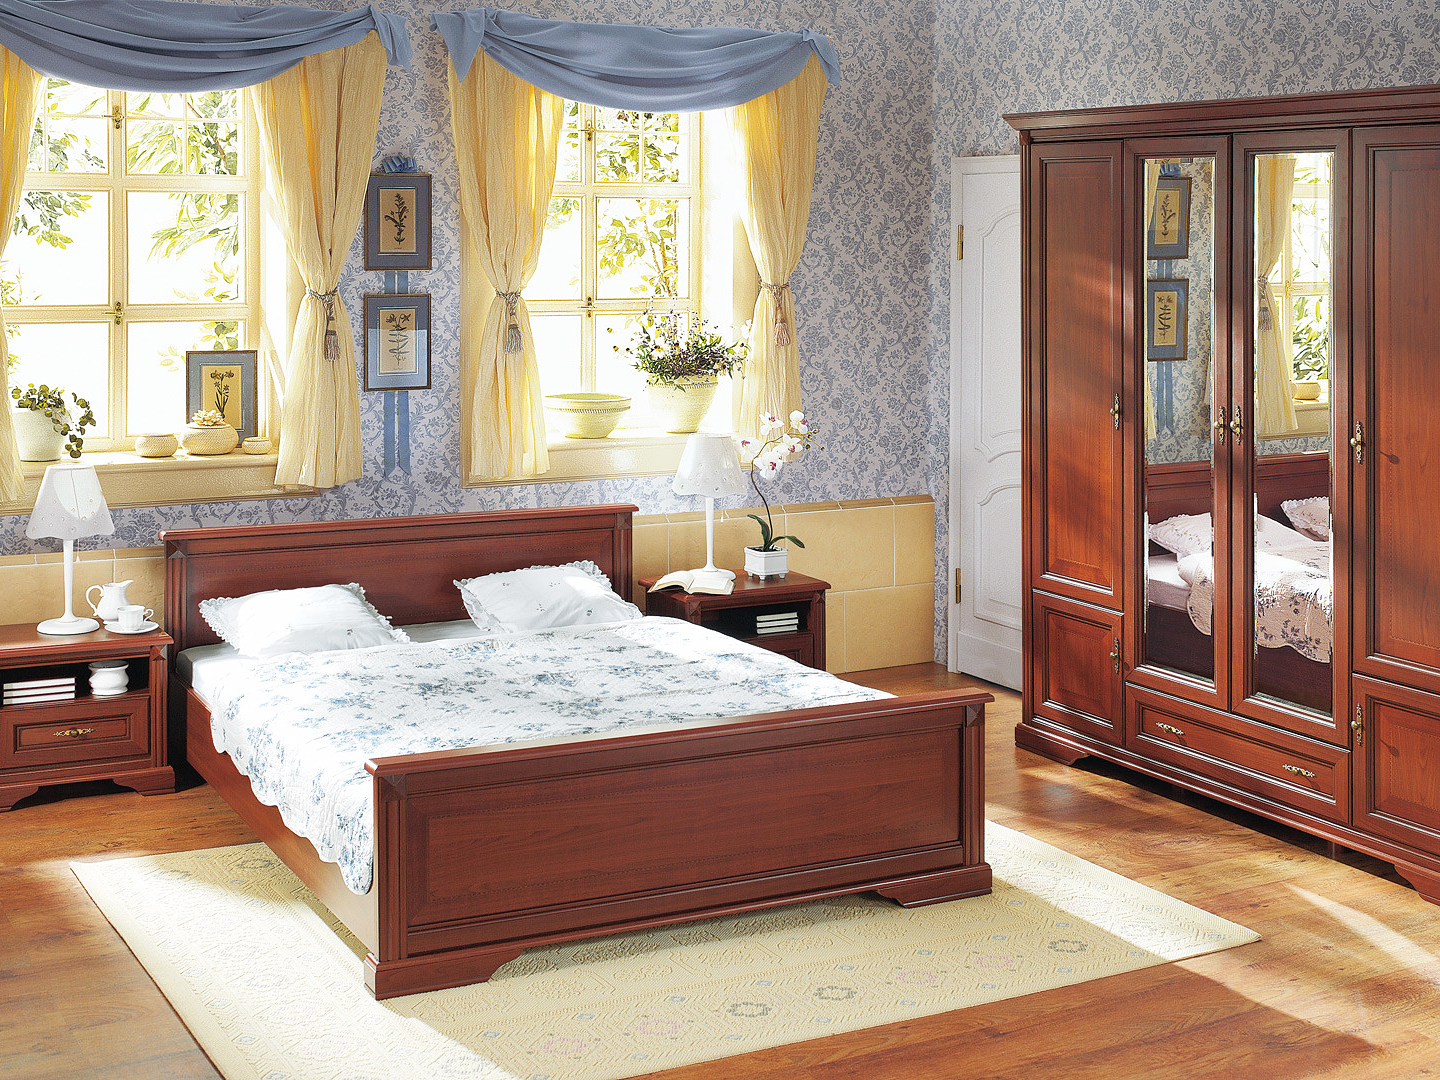 luxusná spálňa s nábytkom z dreveného masívu doplnená pastelovo modrými stenami a žltými závesmi